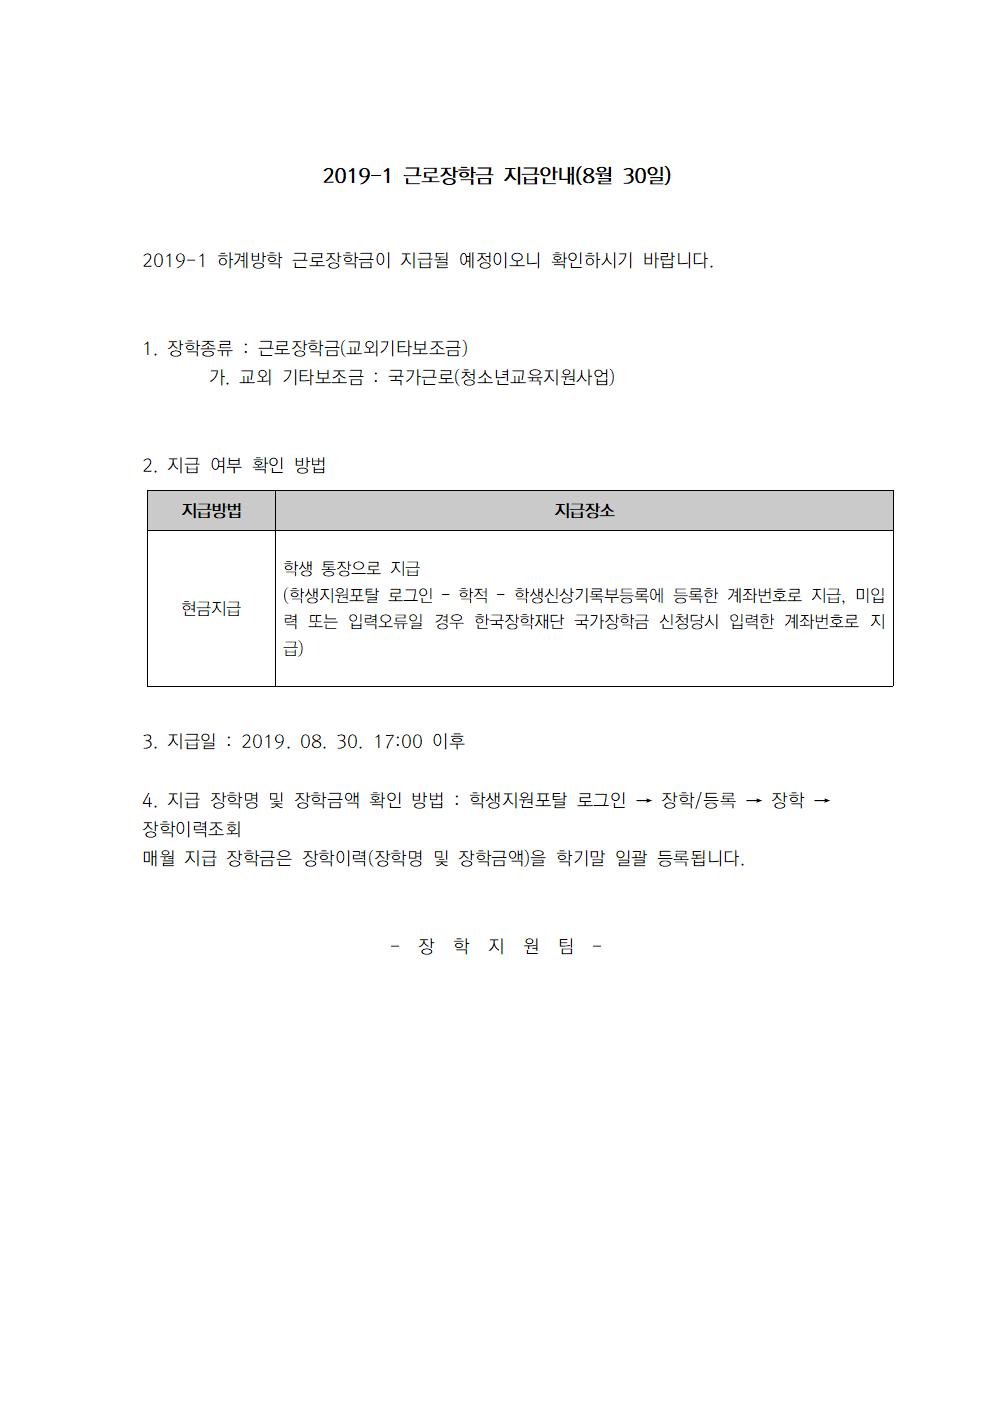 2019-1 근로장학금 지급안내(8월 20일,30일)